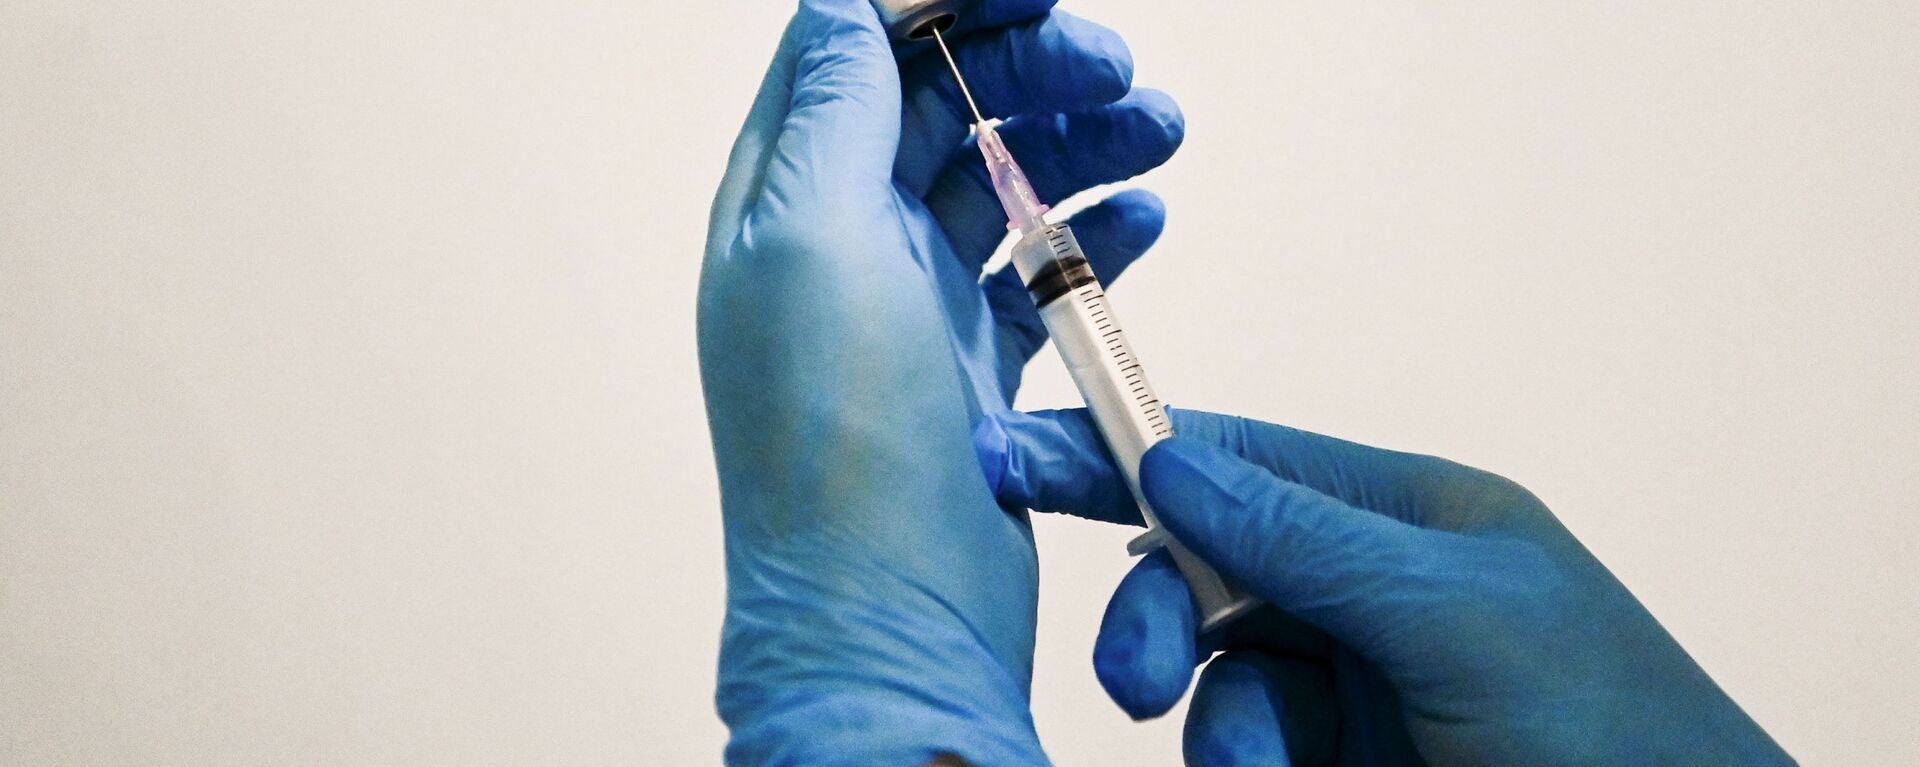 Медицинский сотрудник держит в руках вакцину Спутник V в пункте вакцинации - Sputnik Lietuva, 1920, 14.05.2021